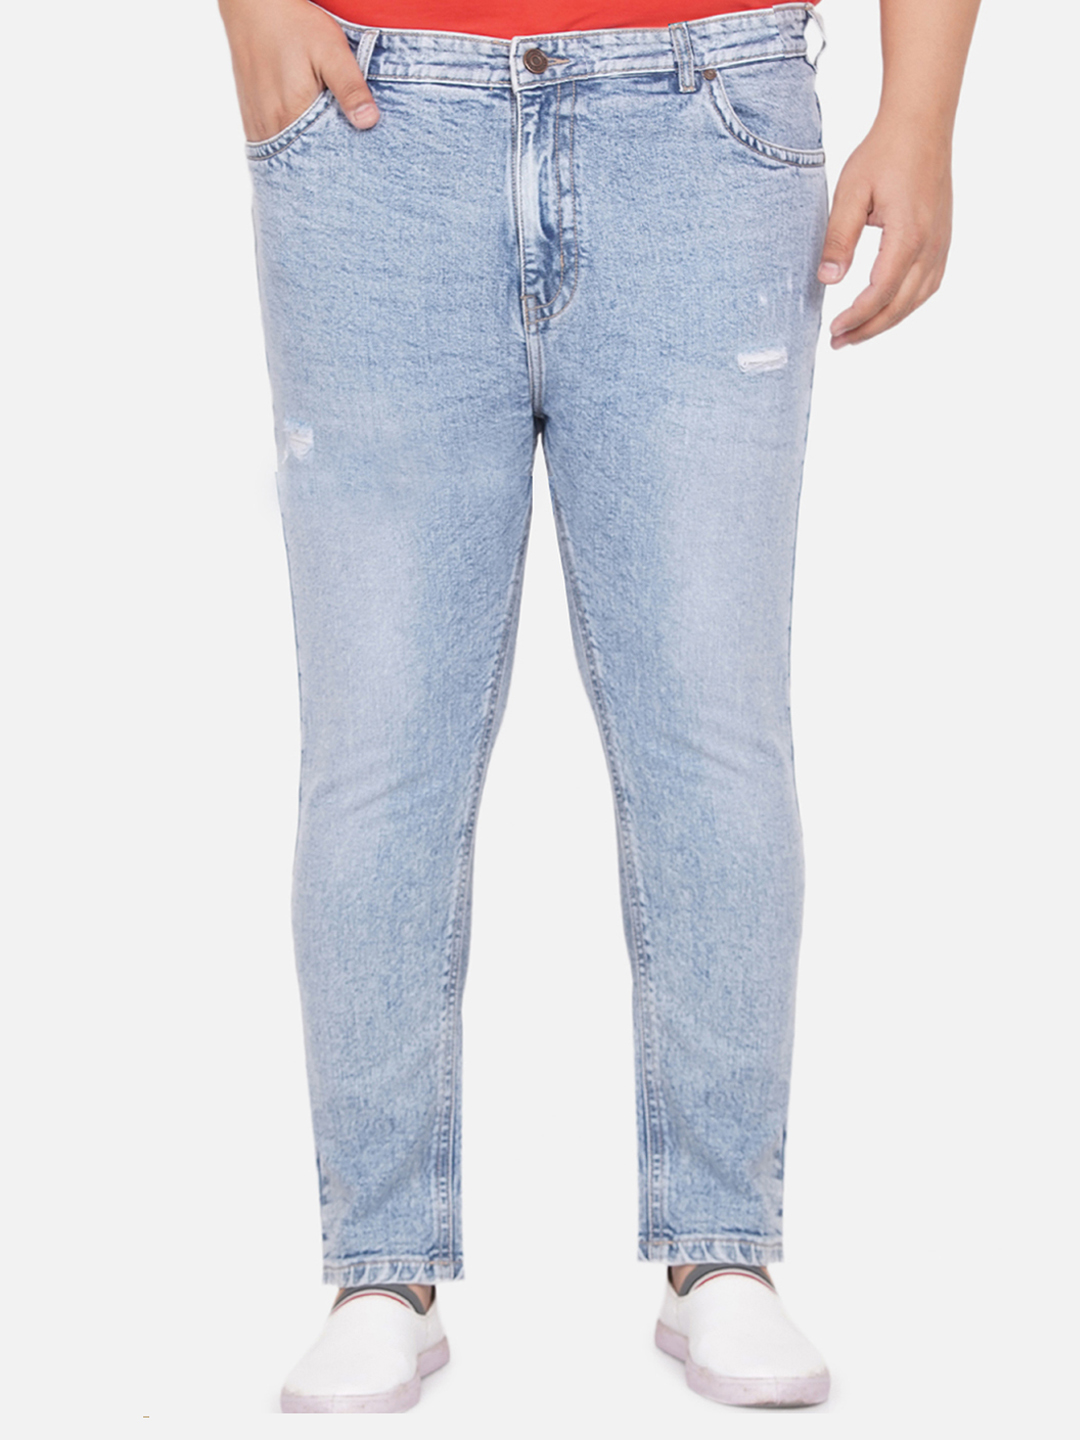 bottomwear/jeans/PJPJ12253/pjpj12253-1.jpg